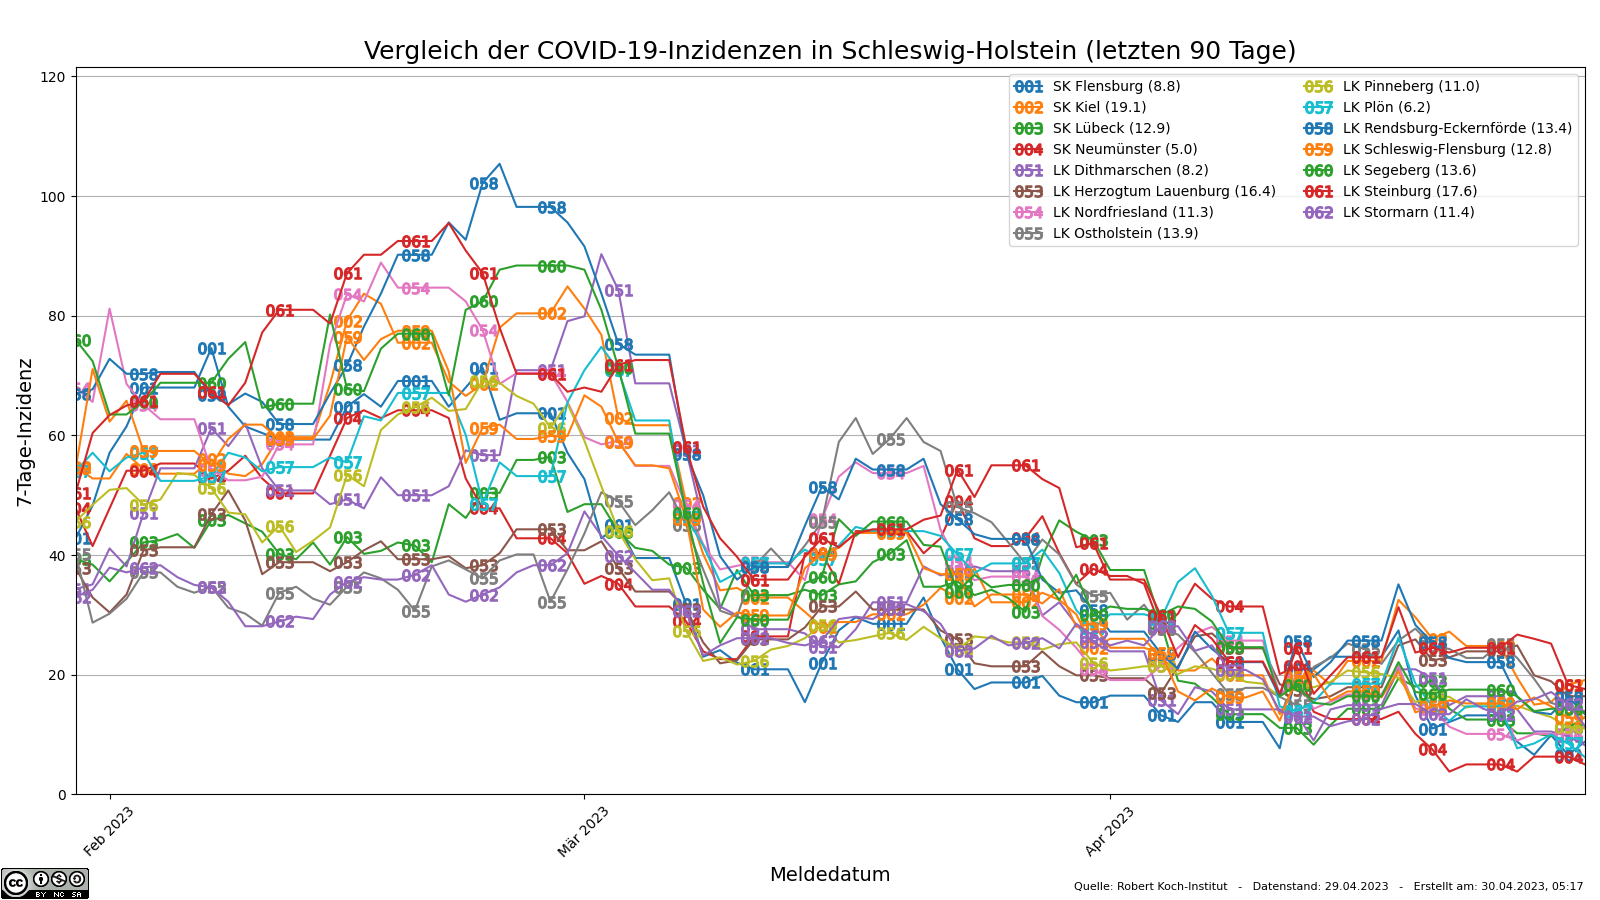 Vergleich der SARS-CoV-2-7-Tage-Inzidenzen der letzten 90 Tage in Schleswig-Holstein nach Kreisen / kreisfreien Städten.